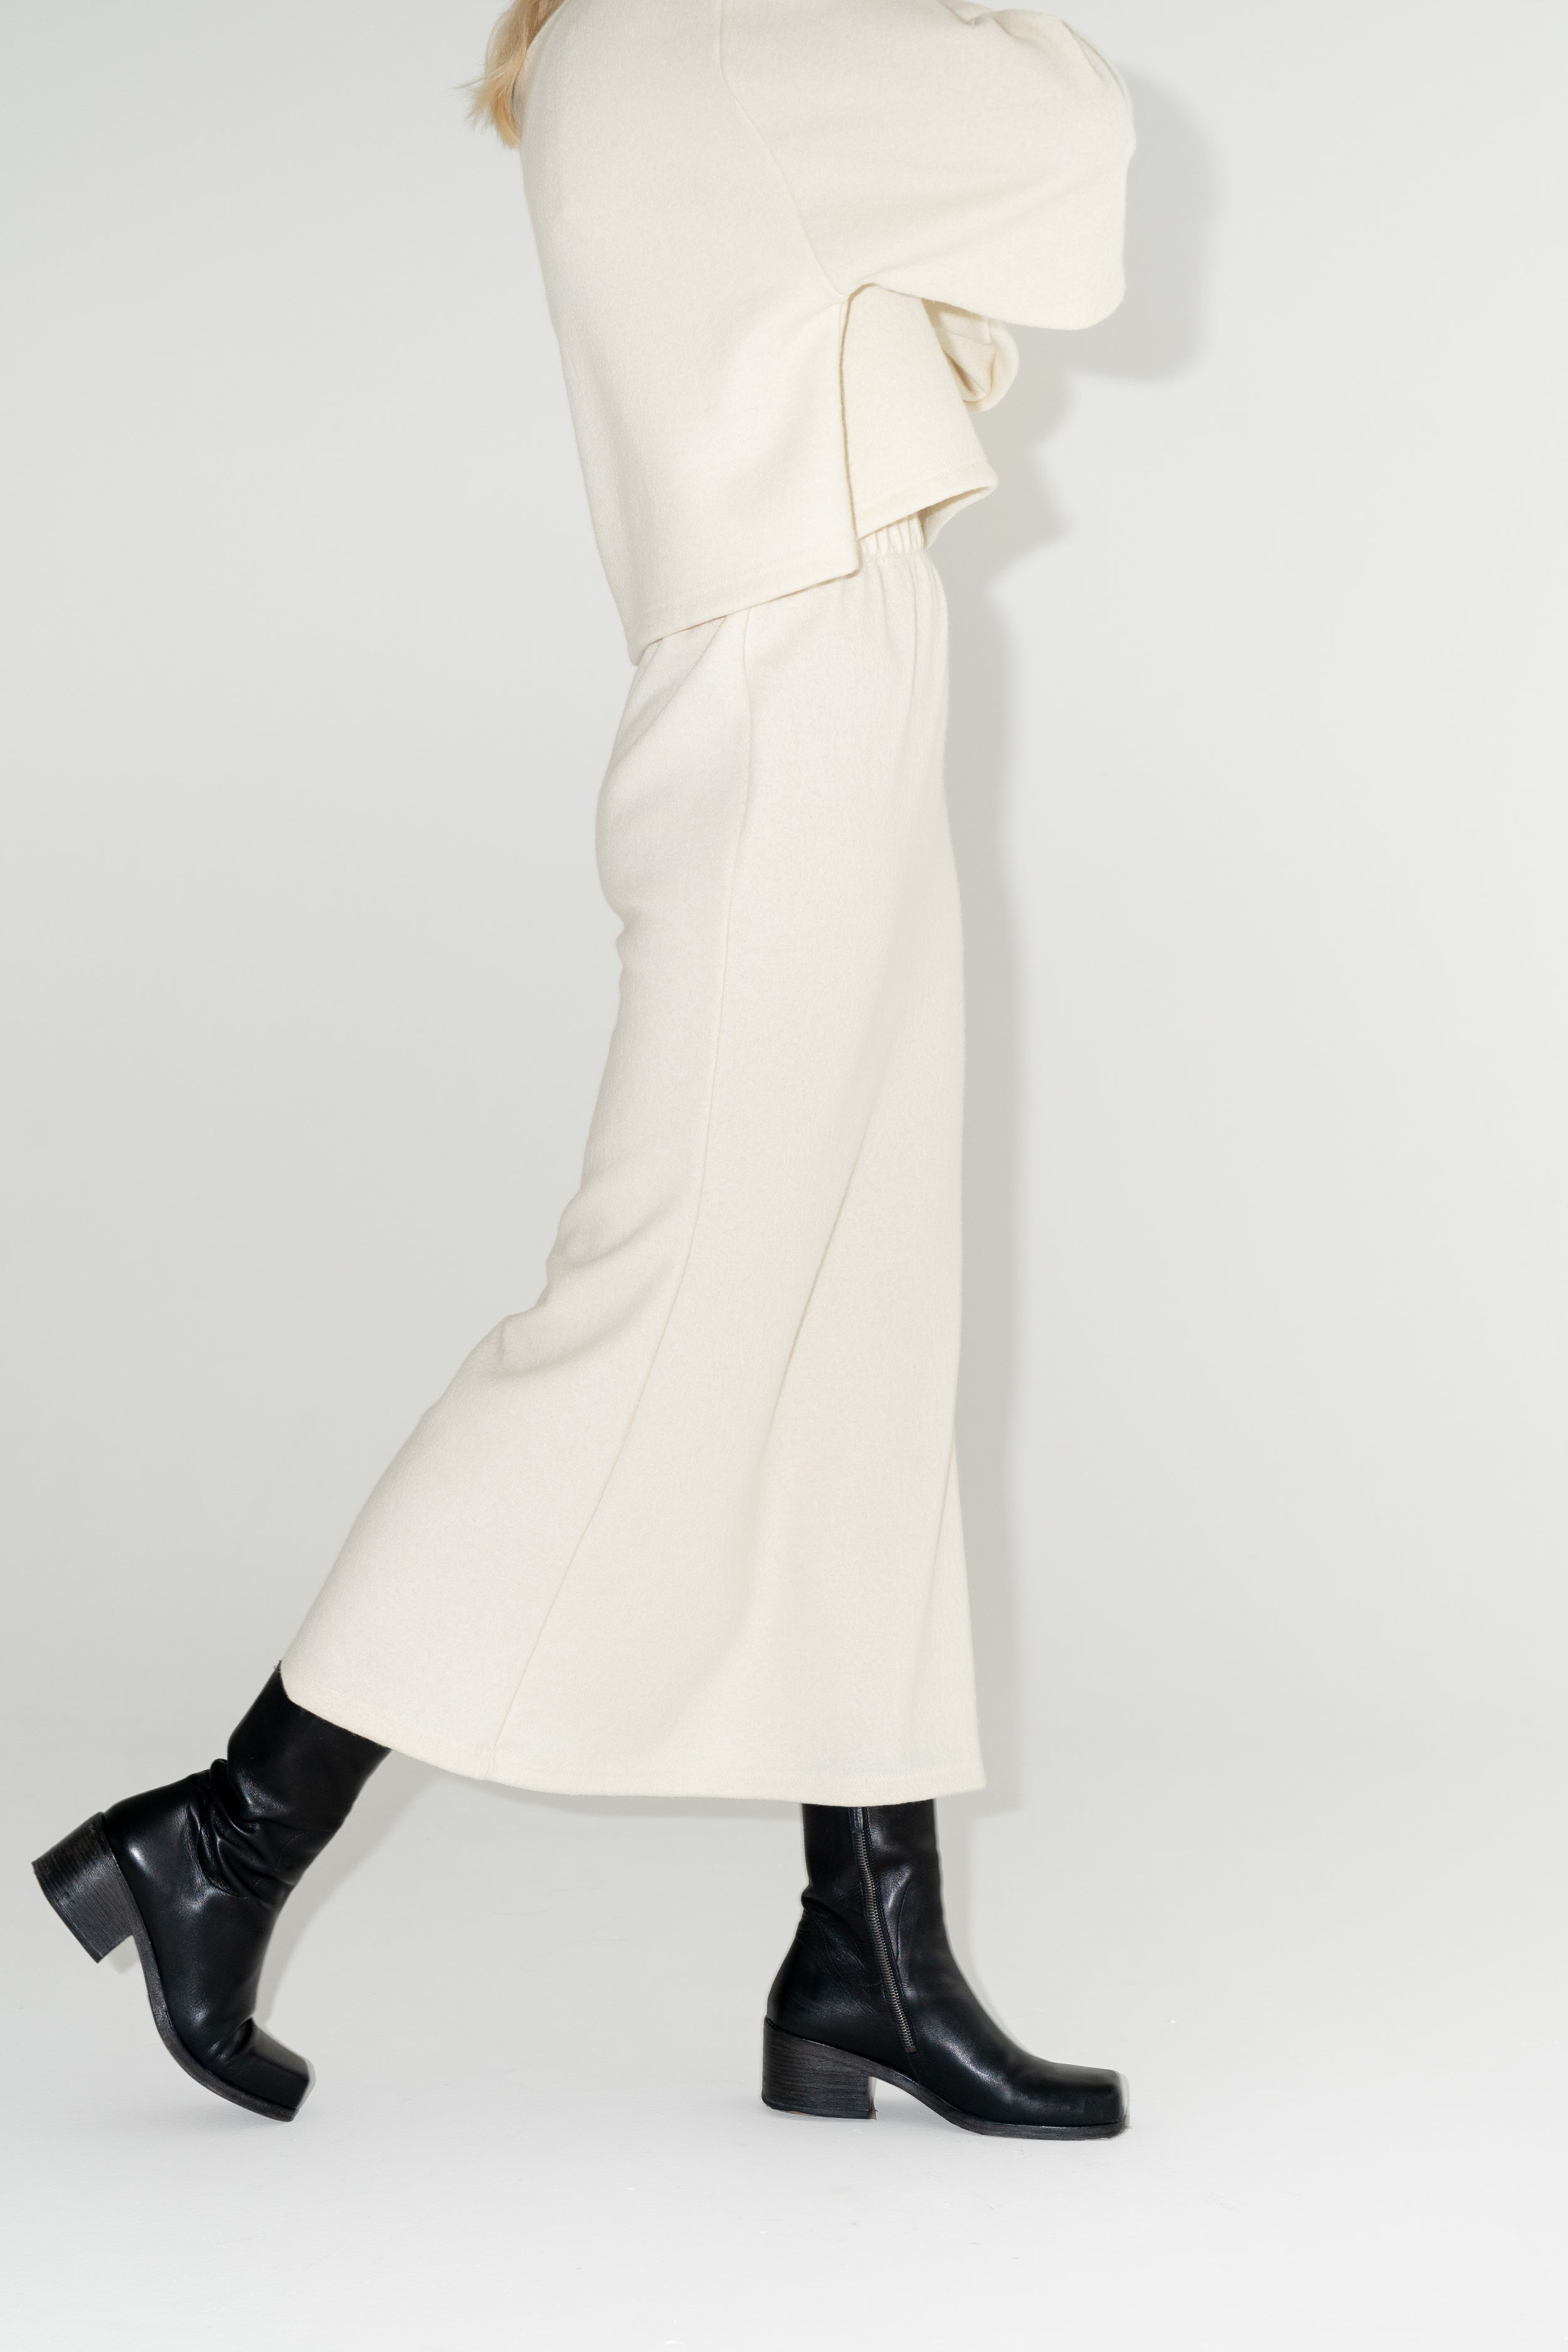 Dámská bílá sukně ke kotníkům z organické merino vlny s černými kozačkami. ADVA Studios